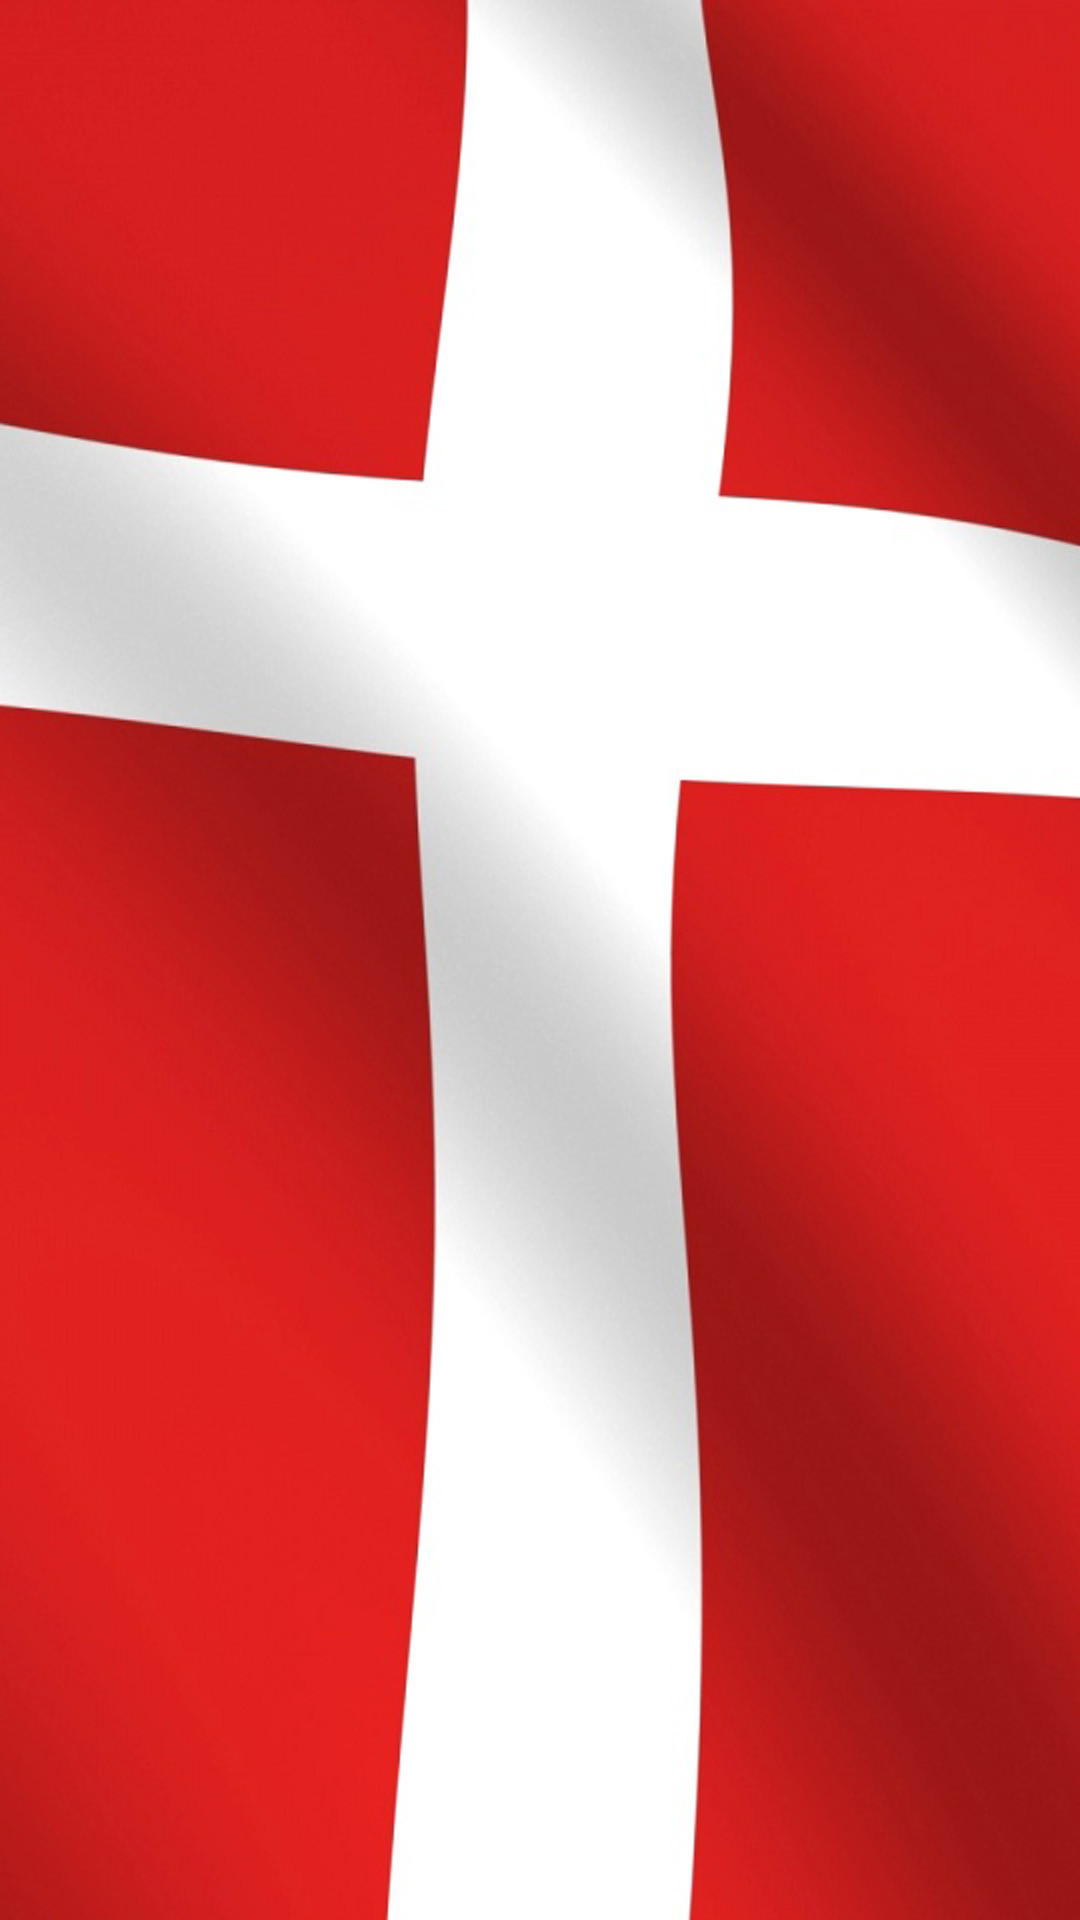 1080x1920 Denmark flag HD Wallpaper iPhone 6 plus - wallpapersmobile.net